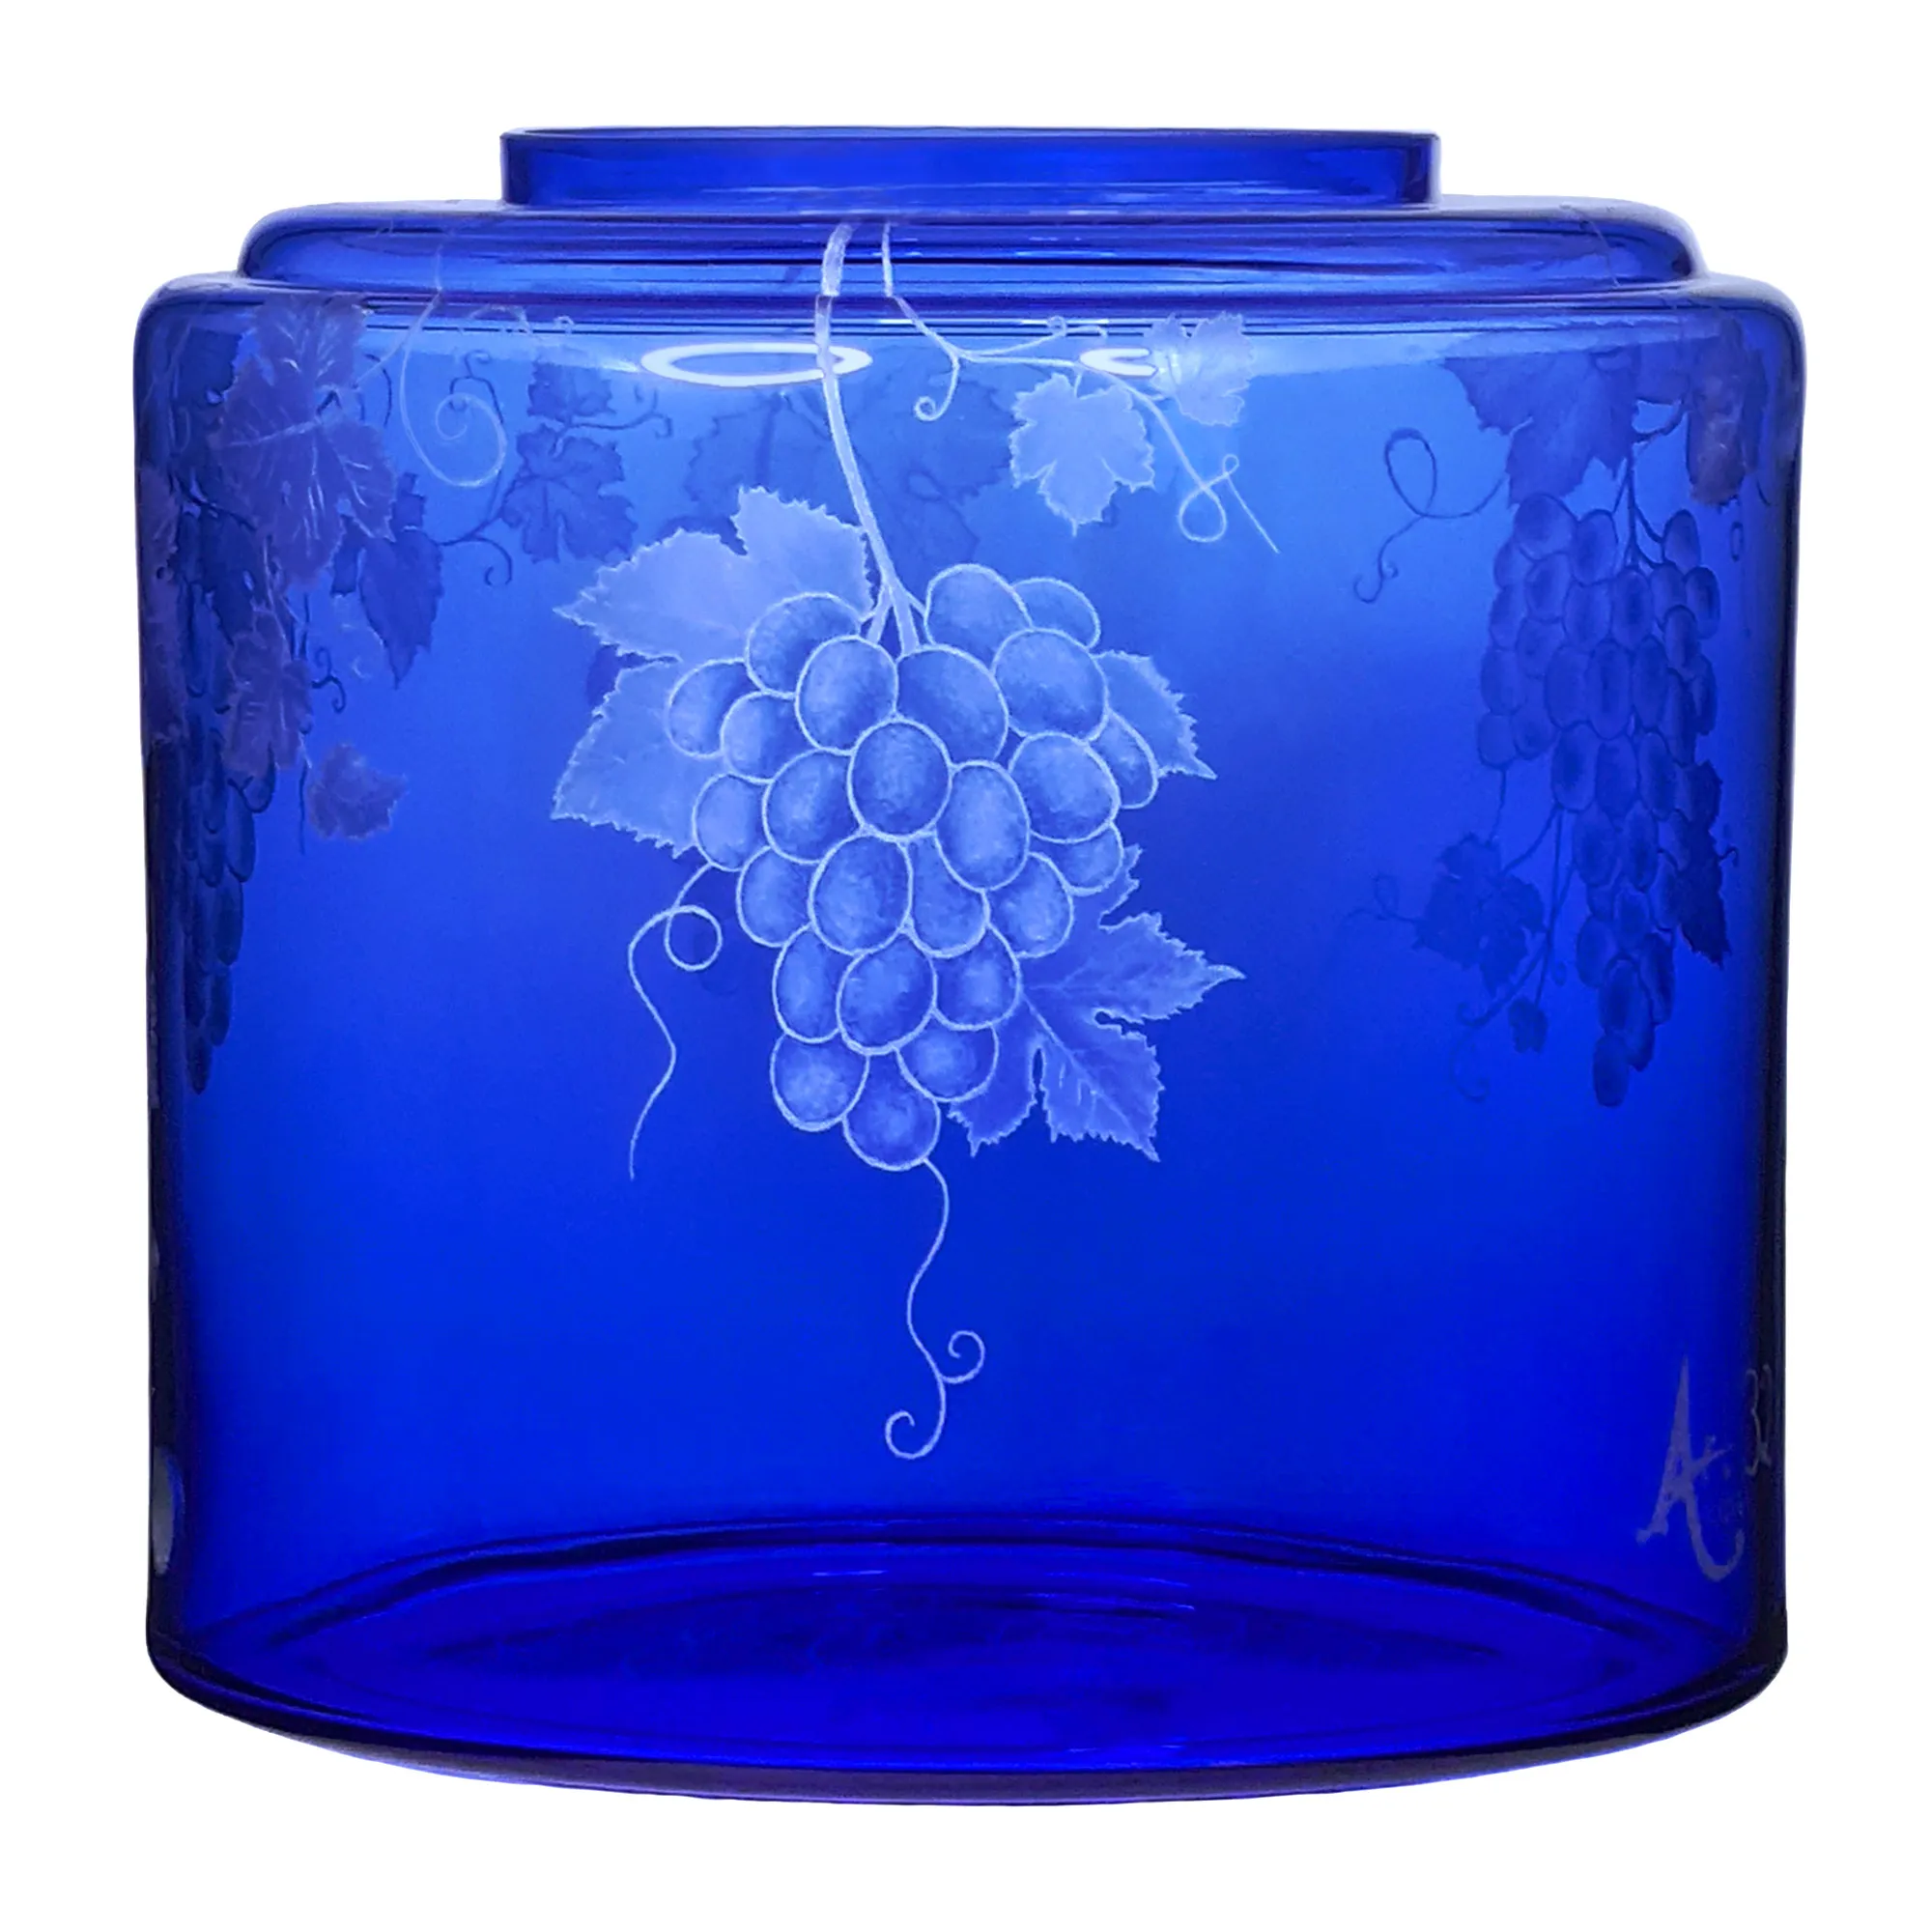 Vorratstank für einen Acala Wasserfilter Mini mit einer Handgravur. Die Gravur zeigt, auf blauem Glas, Traubenranken und Blätter.Ansicht von rechts.